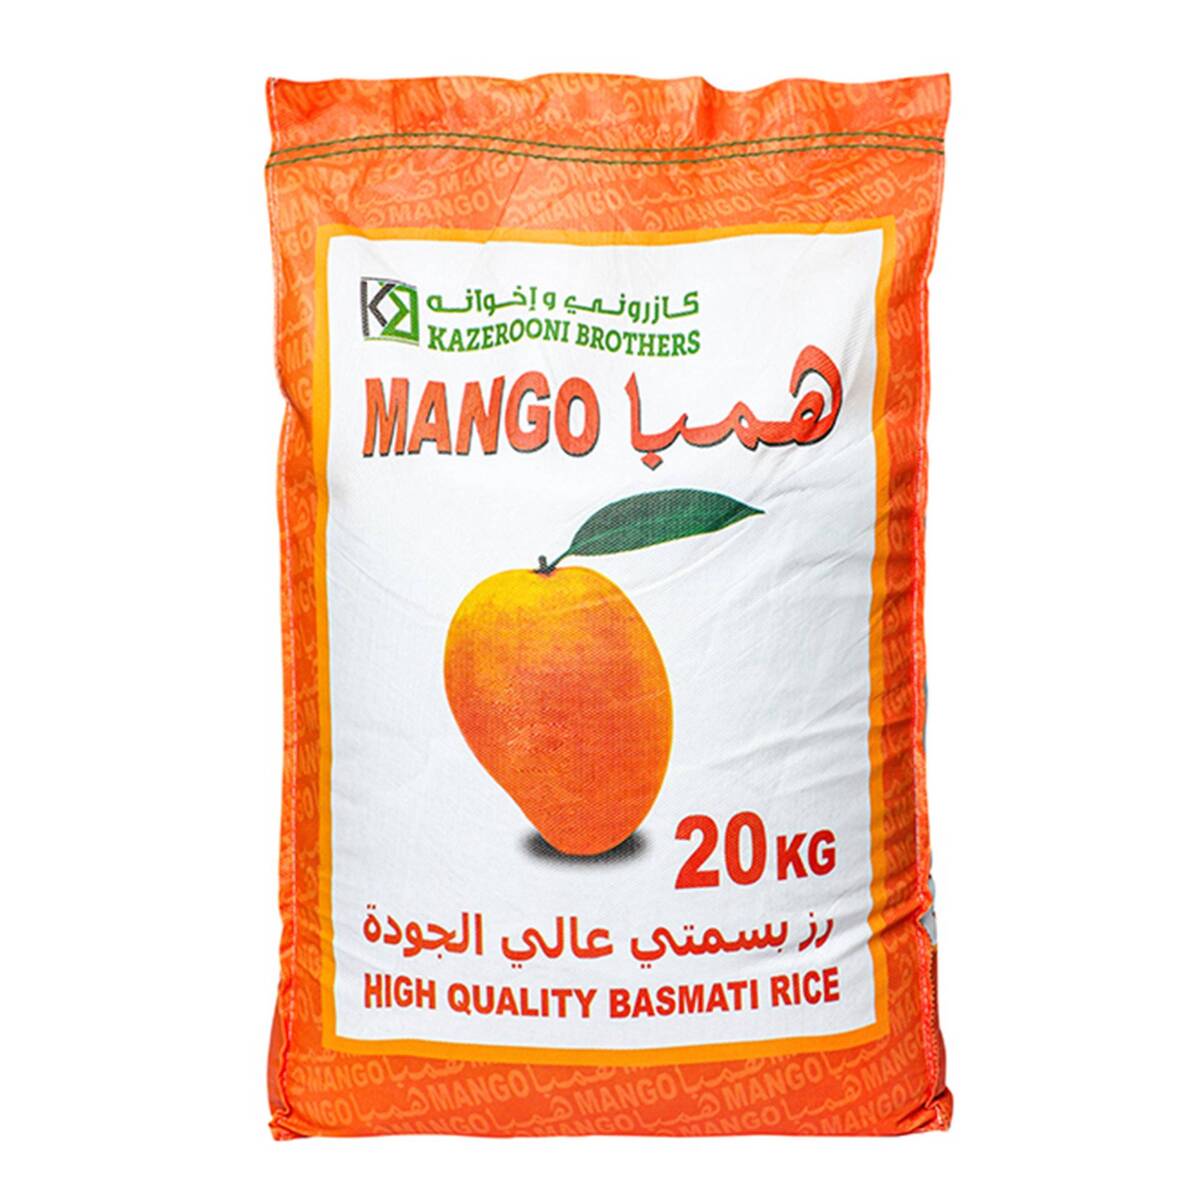 Mango Basmati Rice 20 kg